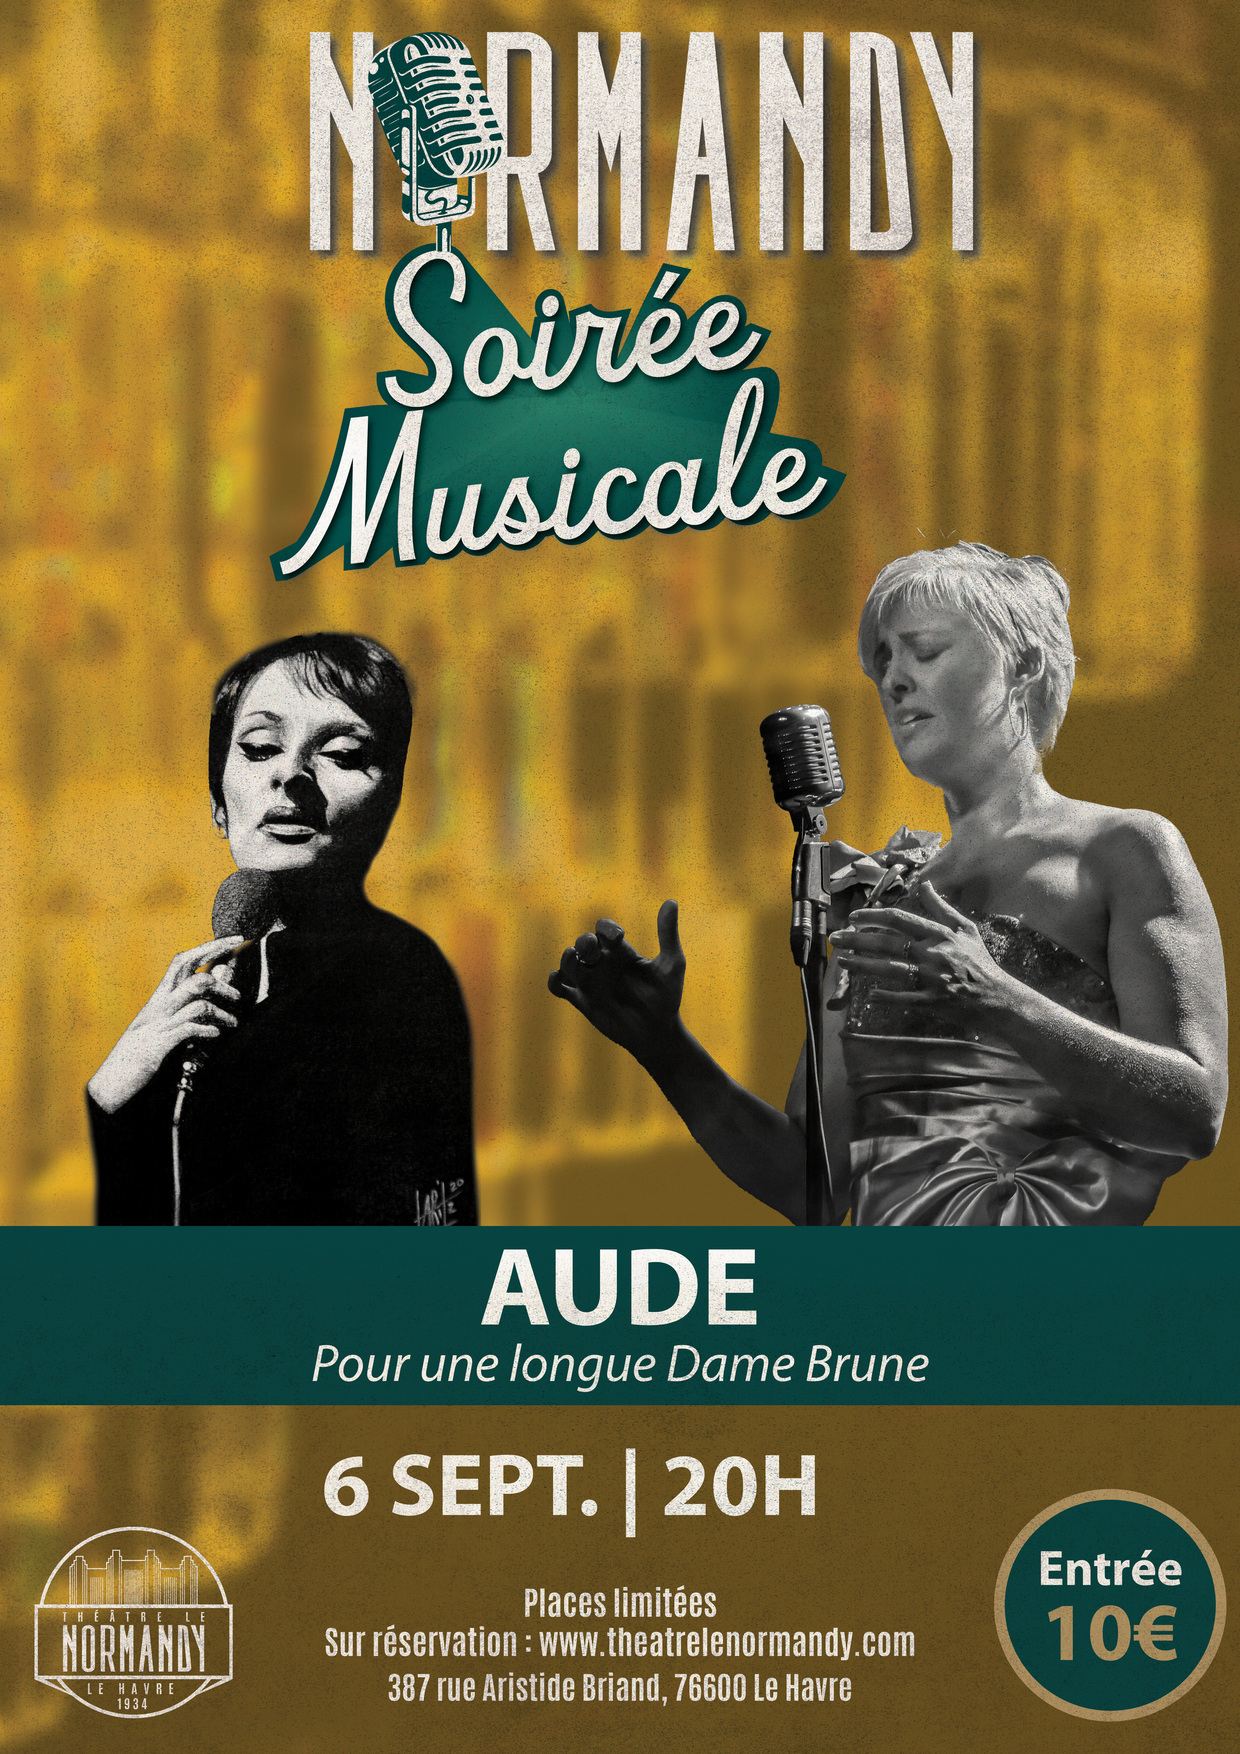 Soirée Musicale au Normandy : Aude "Pour une longue Dame Brune"